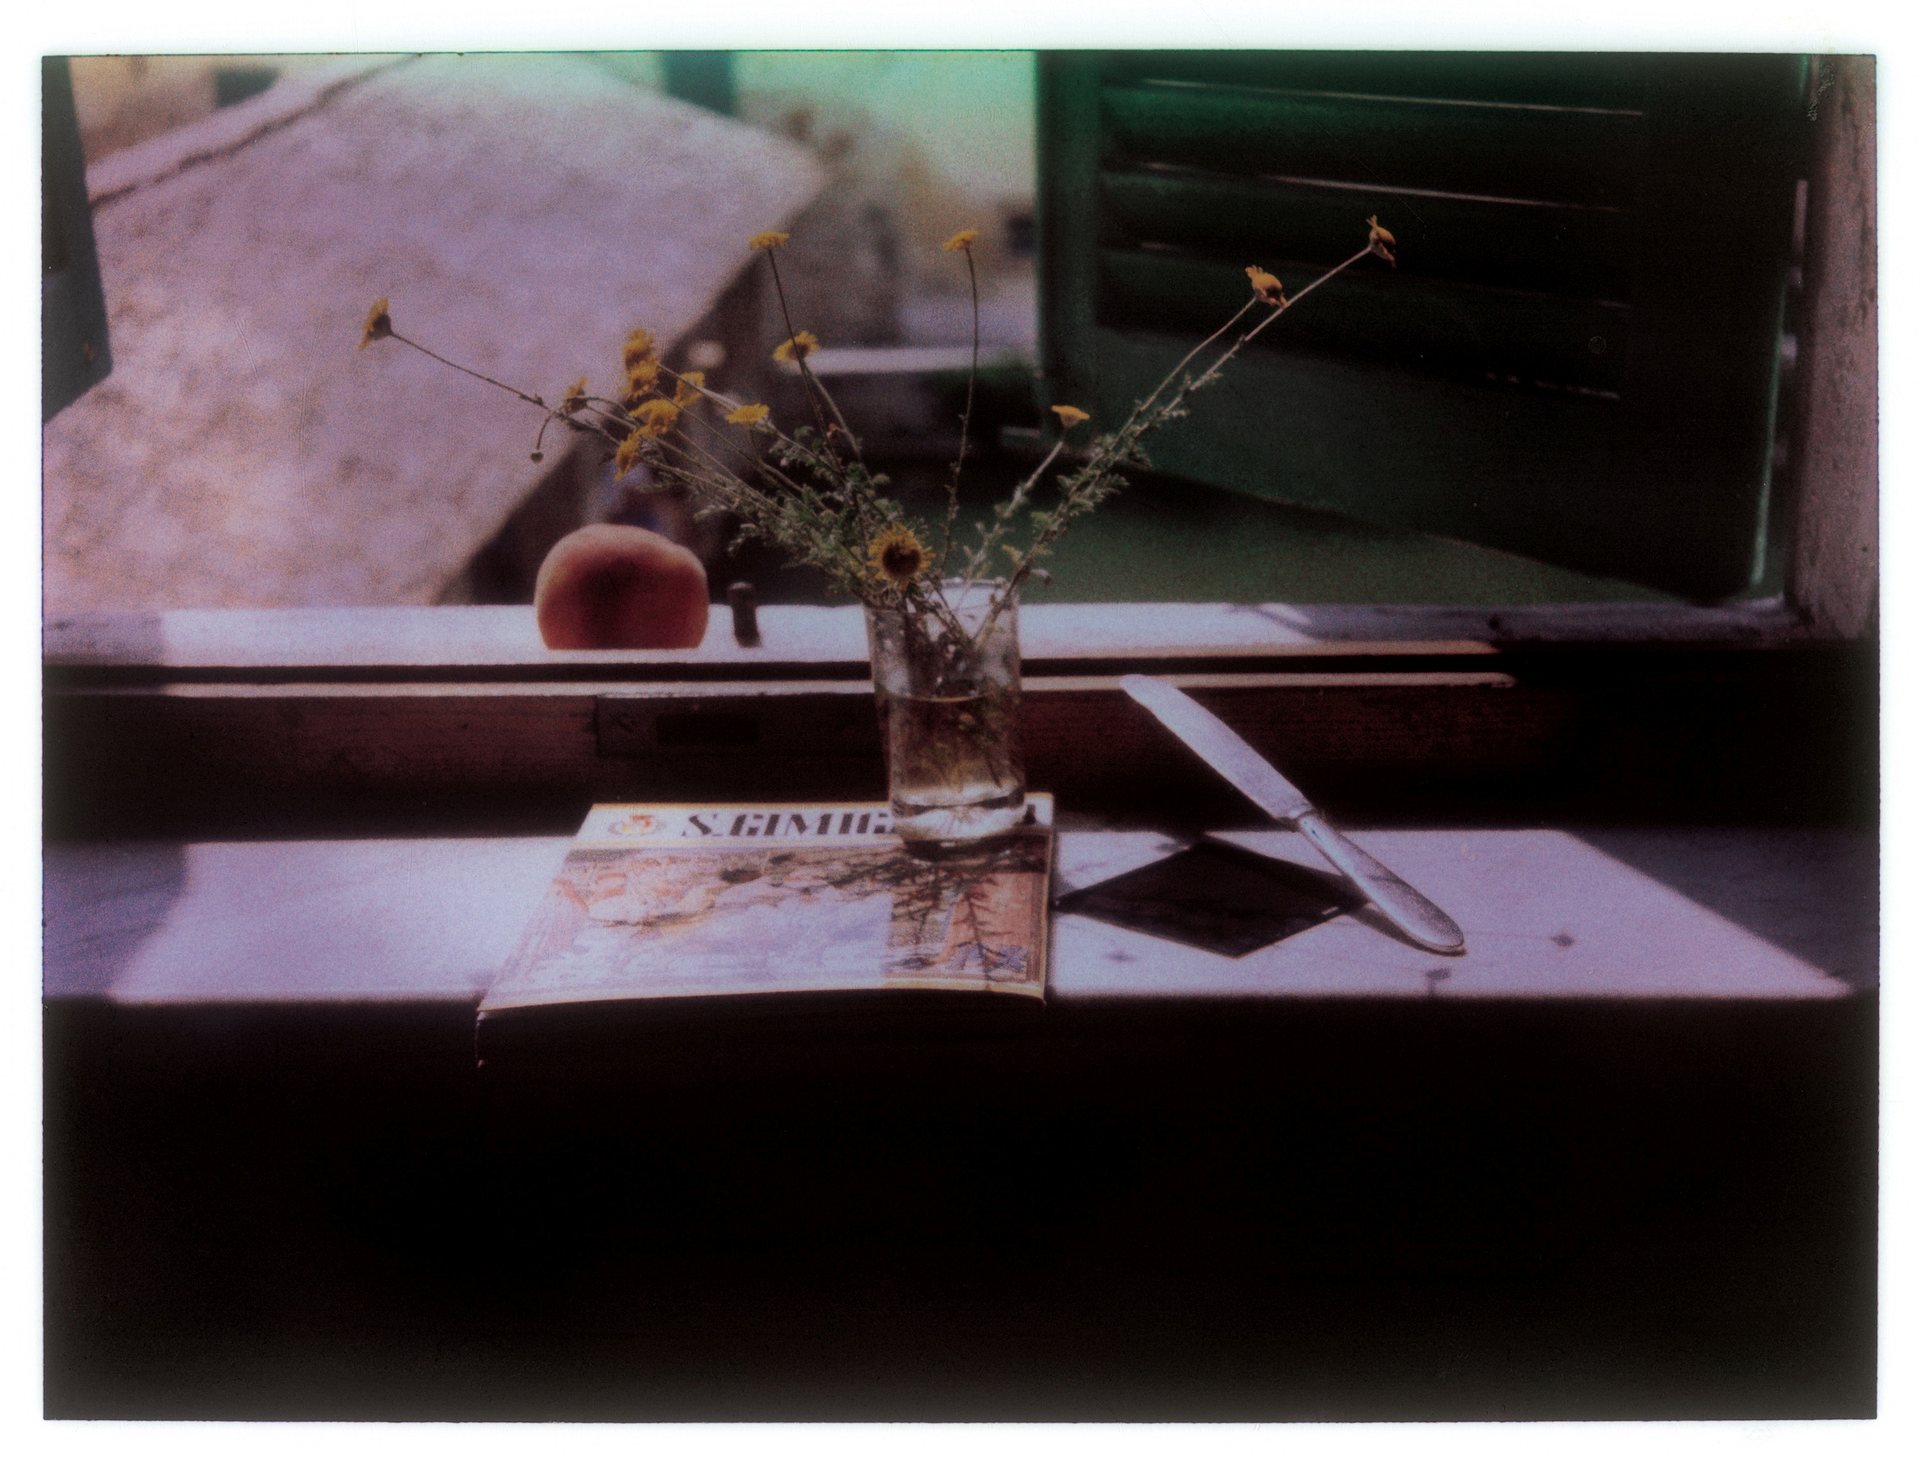 Οι ποιητικές Polaroid φωτογραφίες του Αντρέι Ταρκόφσκι